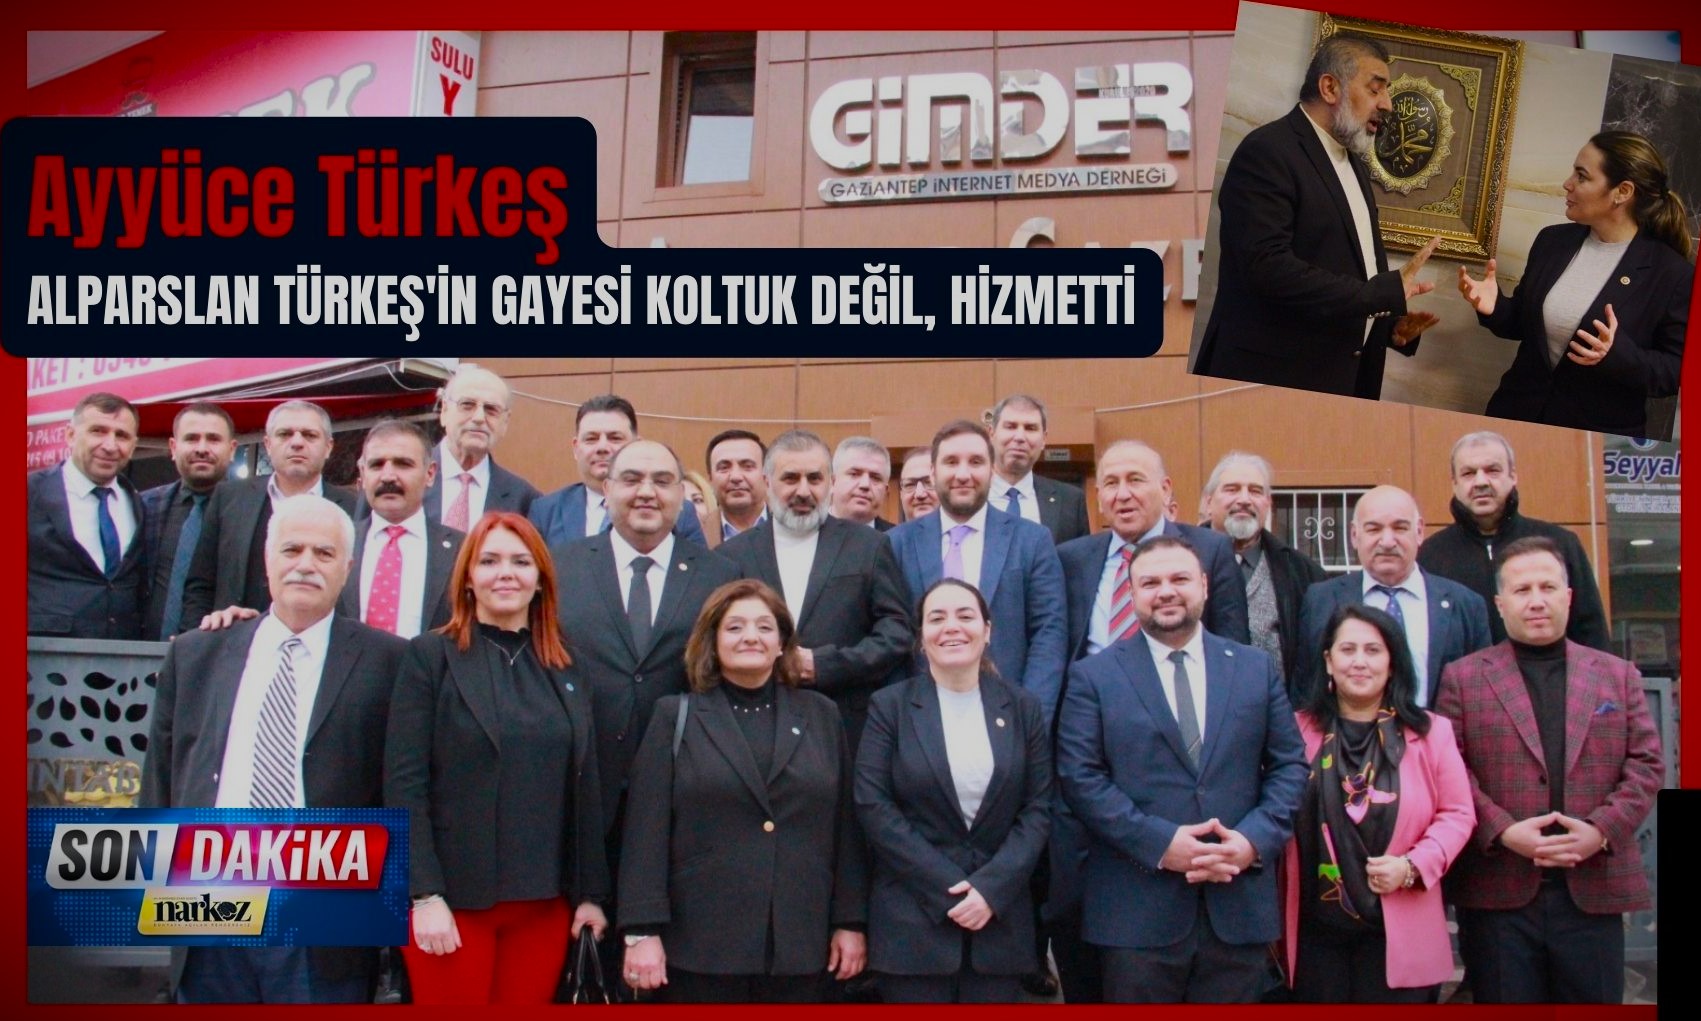 İYİ Parti GİMDER'i ziyaret etti: Ayyüce Türkeş: "Siyaset nefes alacak" dedi